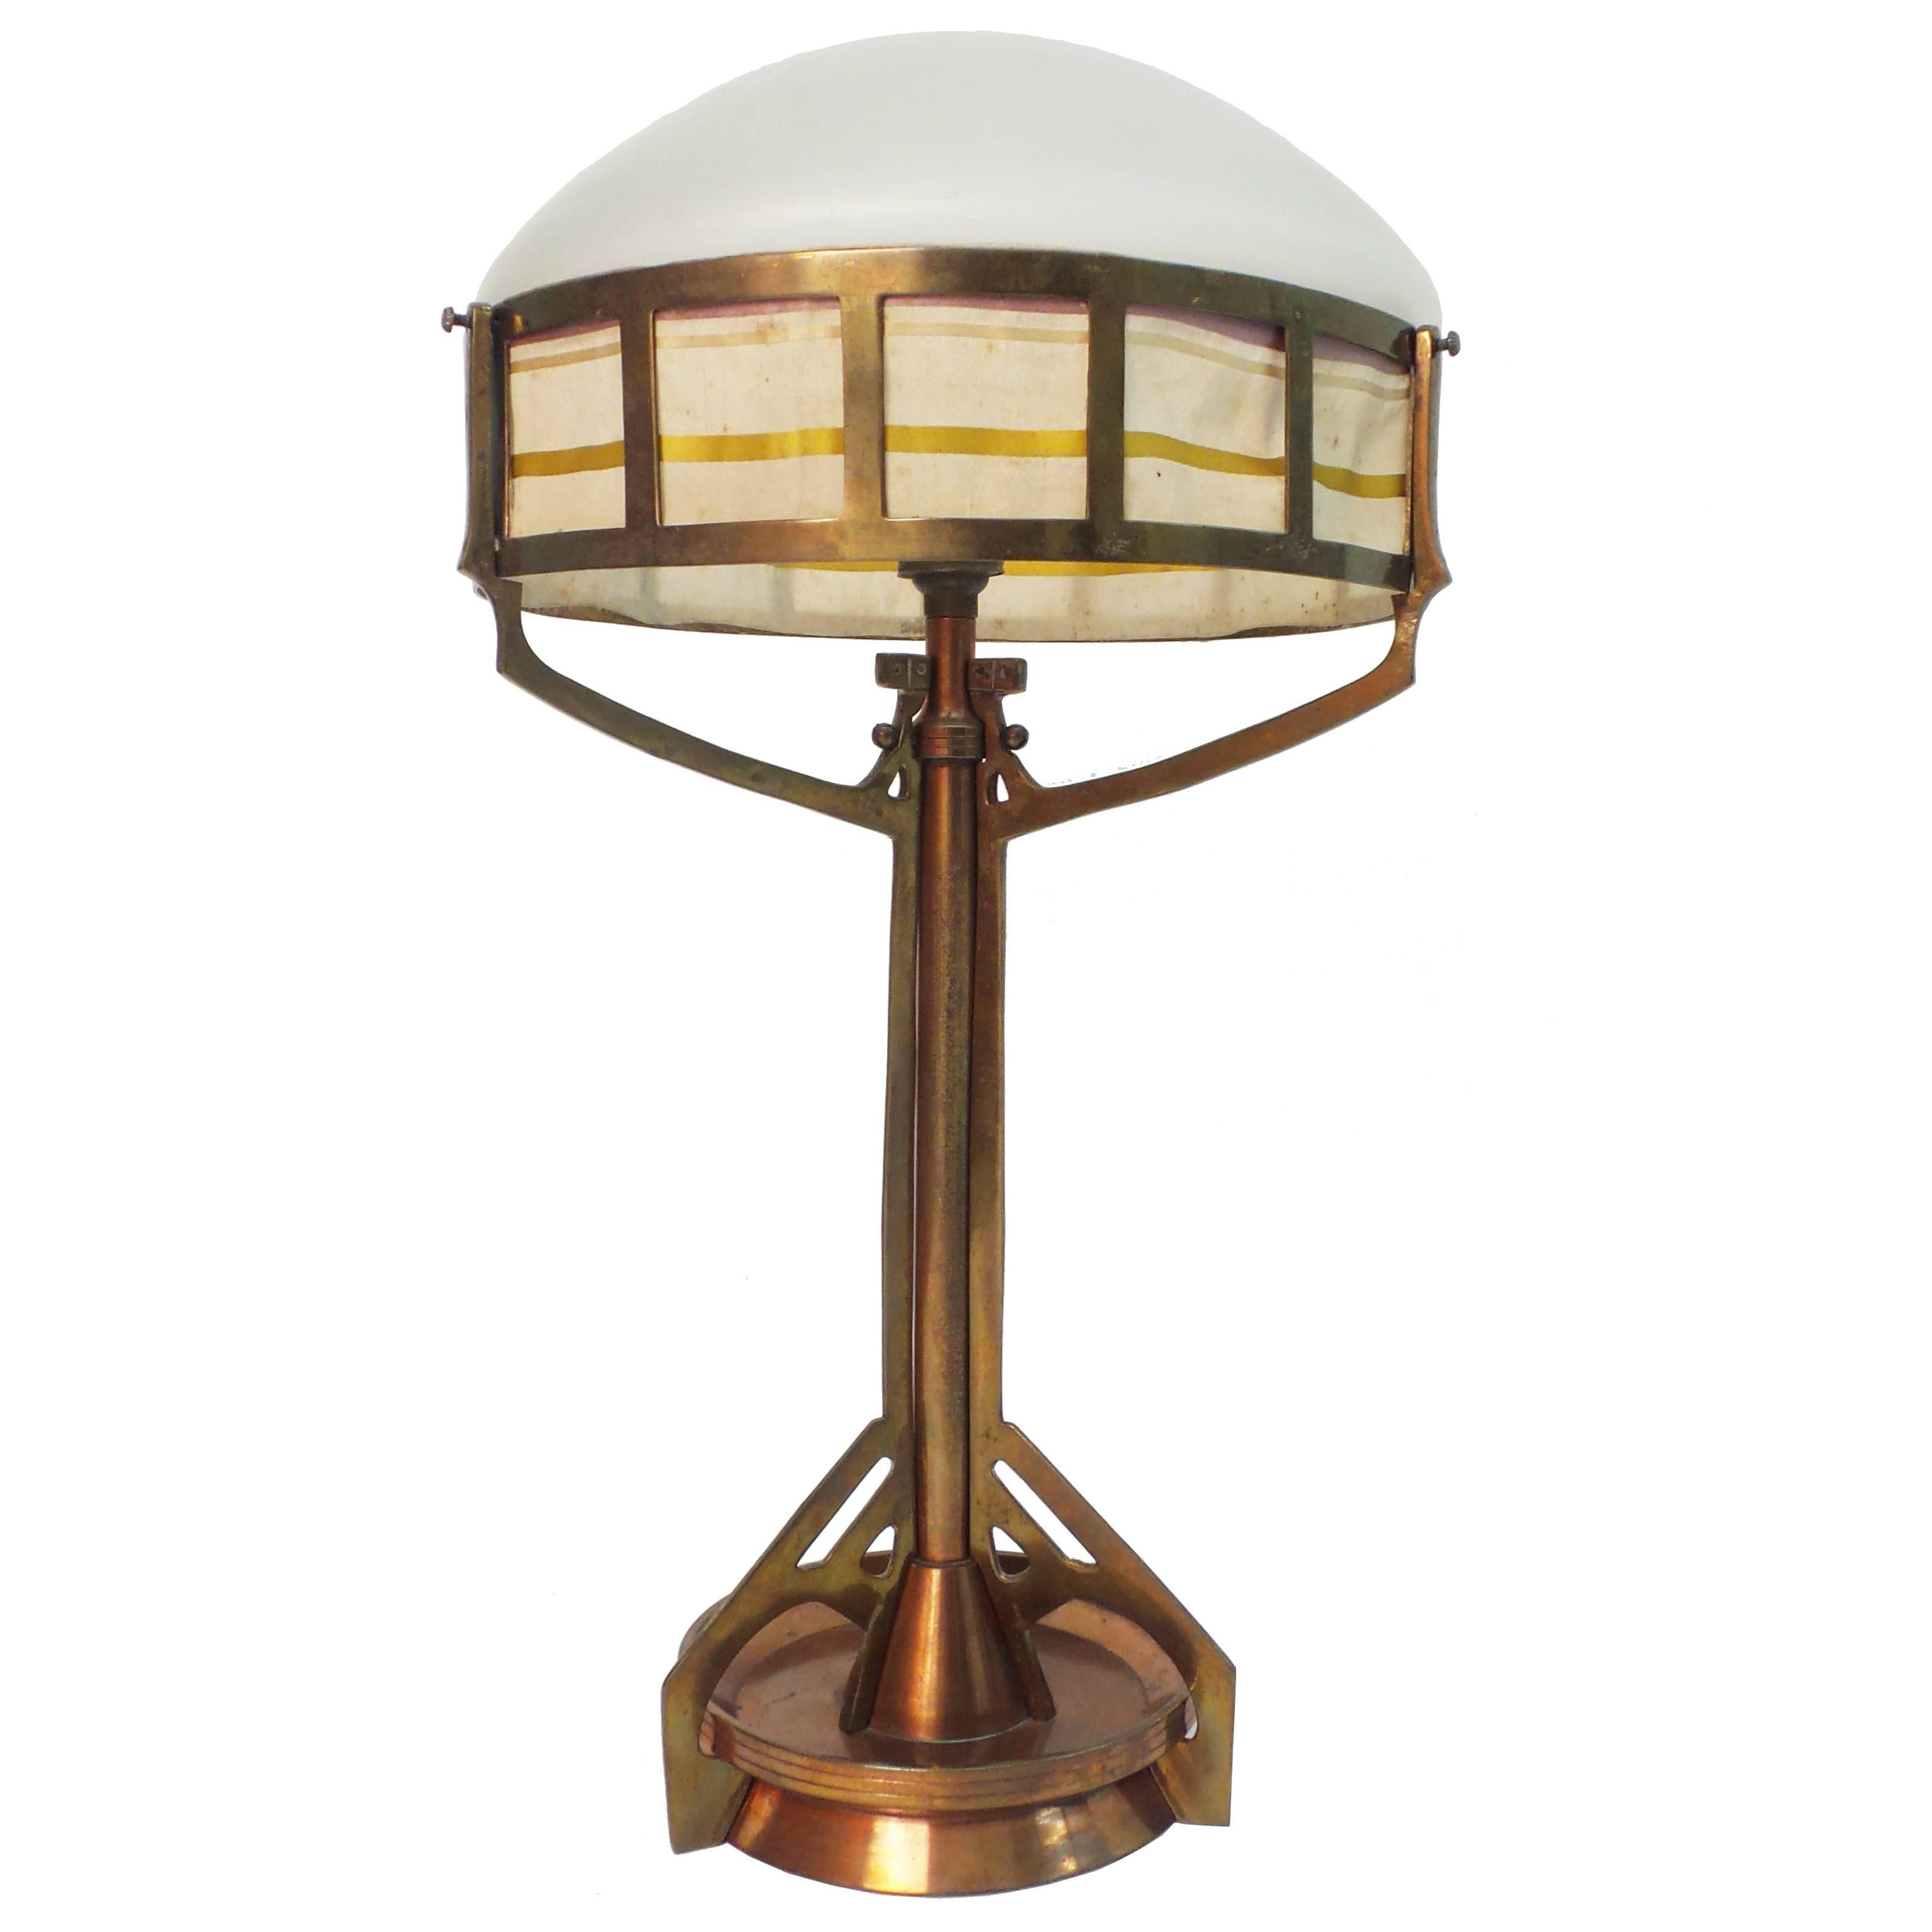 Jugendstil Period Table Lamp For Sale